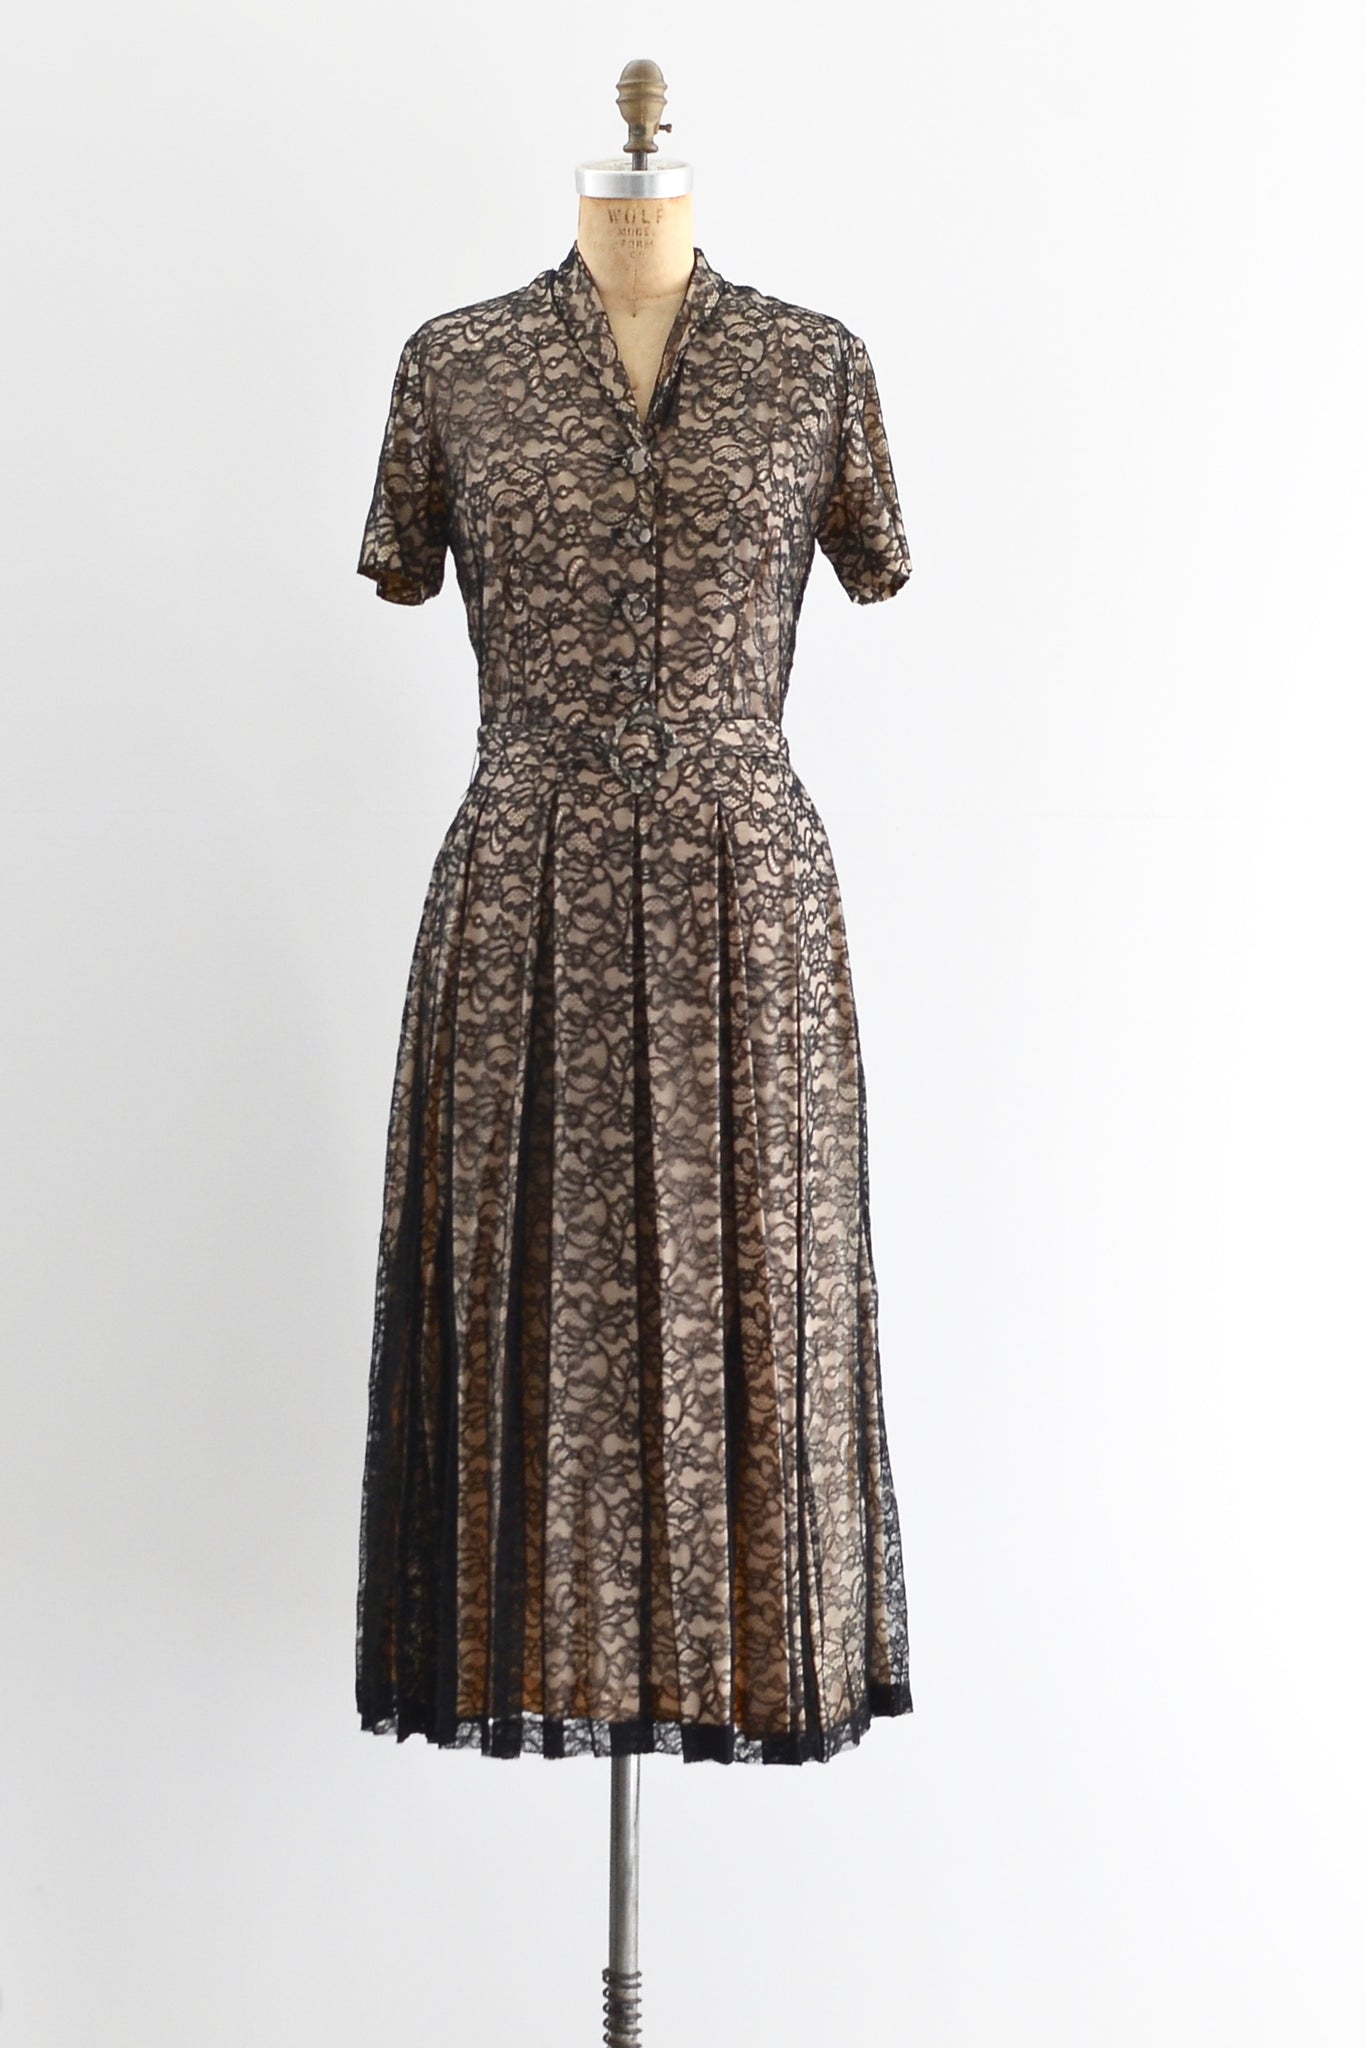 1940s Lace Dress - Pickled Vintage